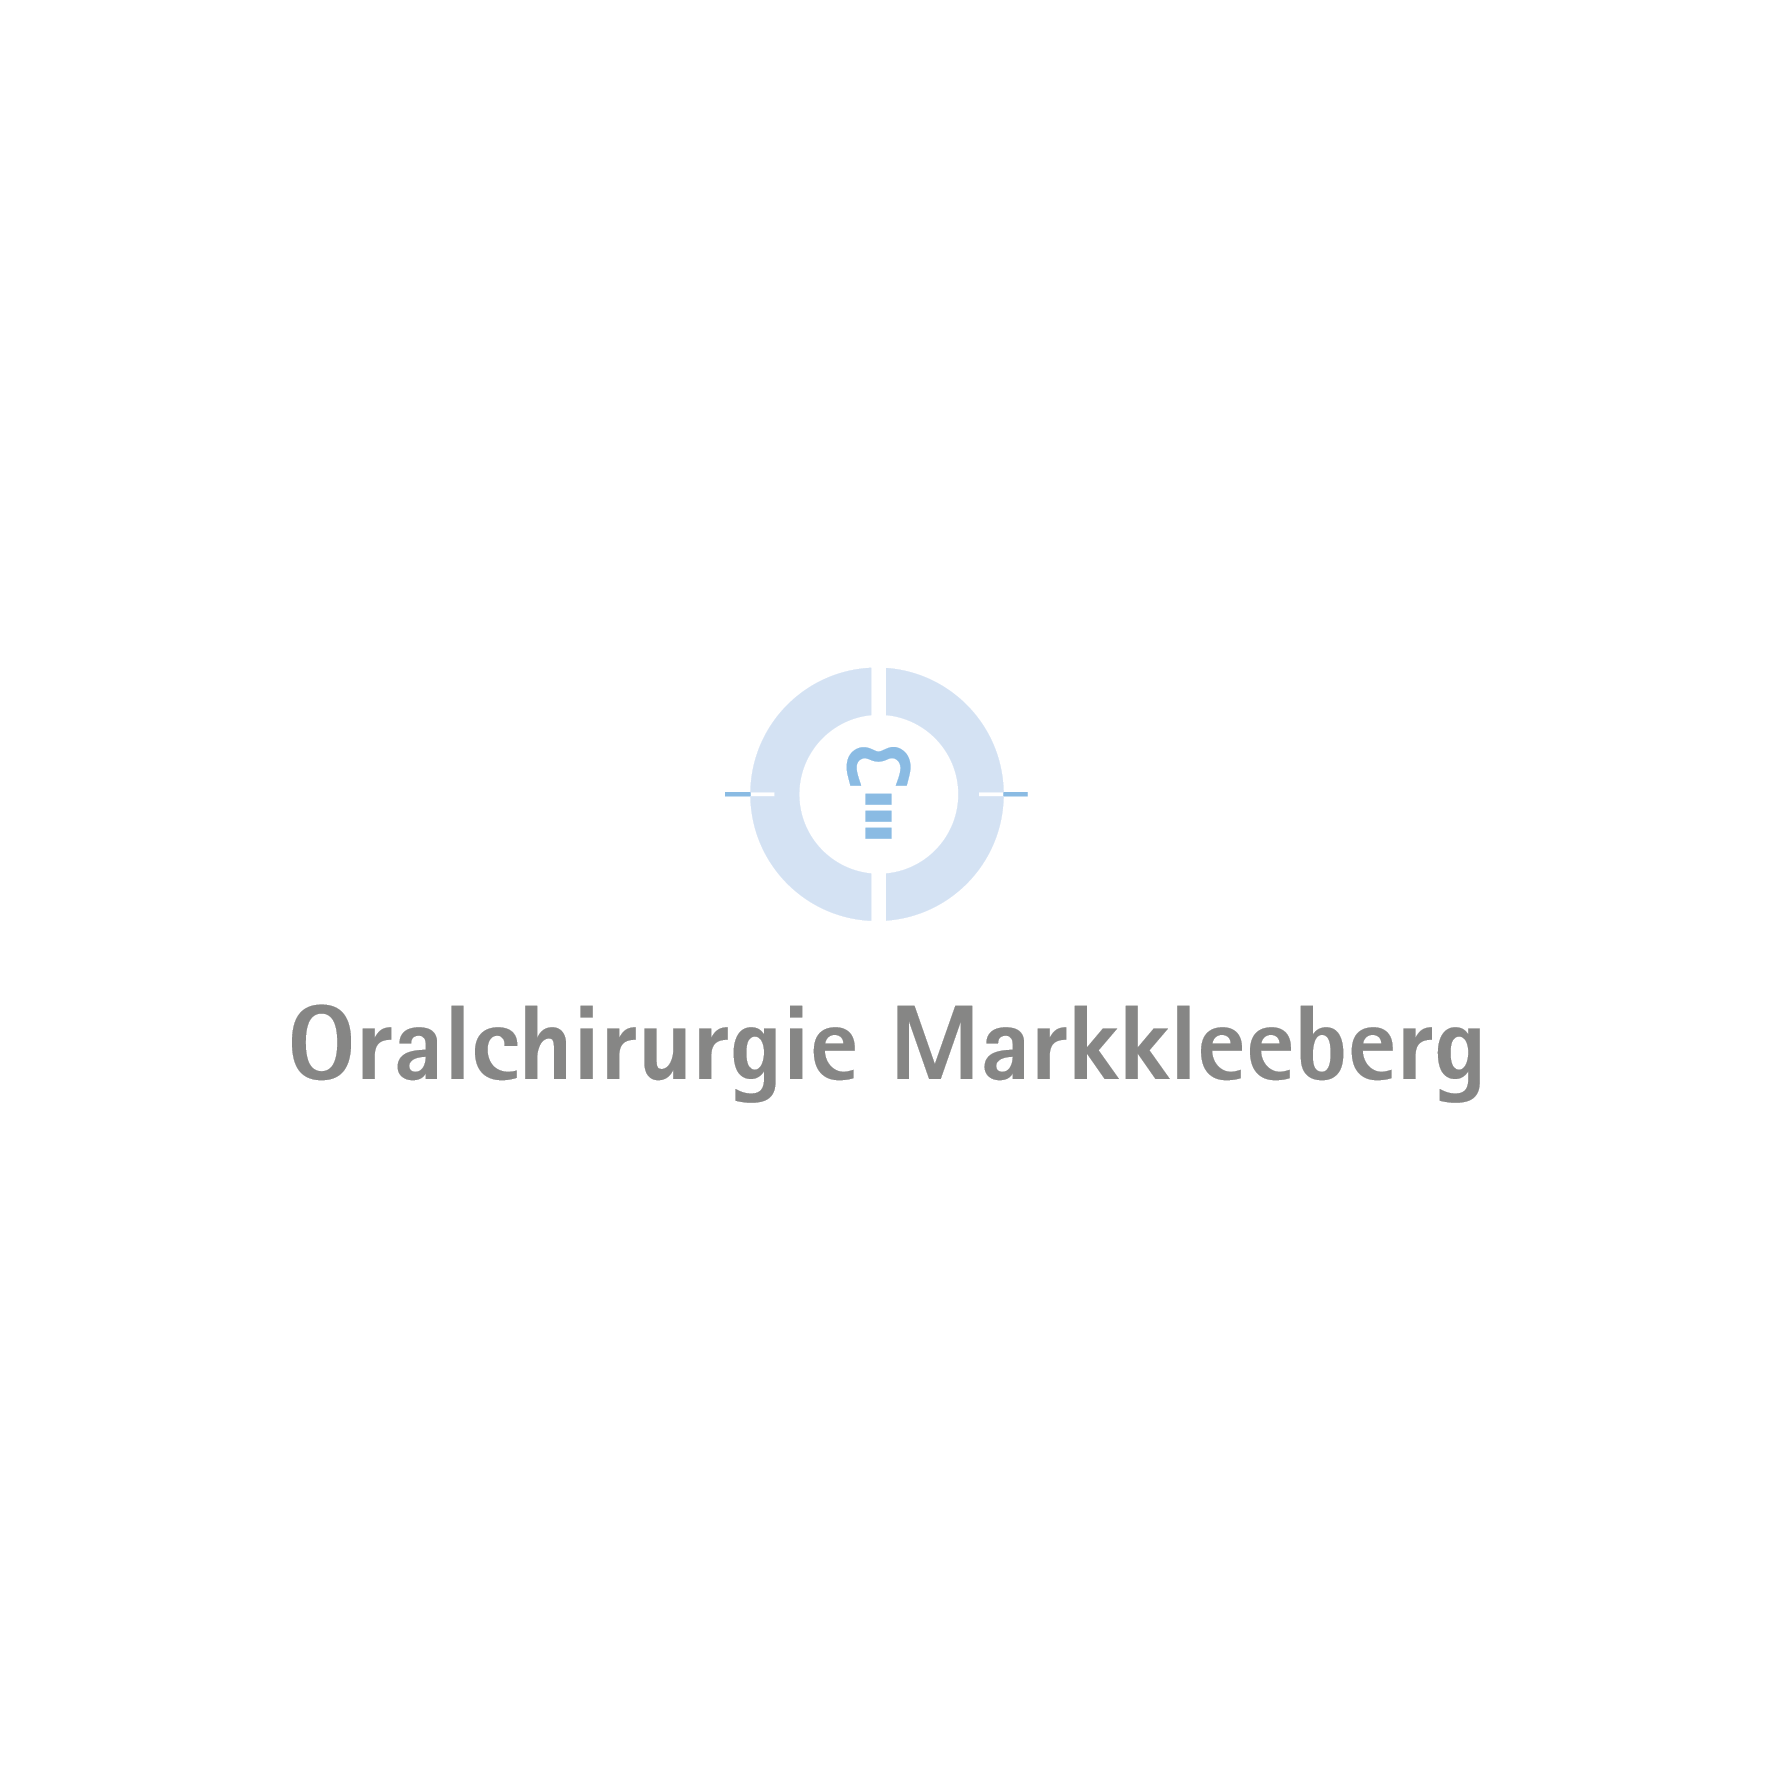 Oralchirurgie Markkleeberg in Markkleeberg - Logo